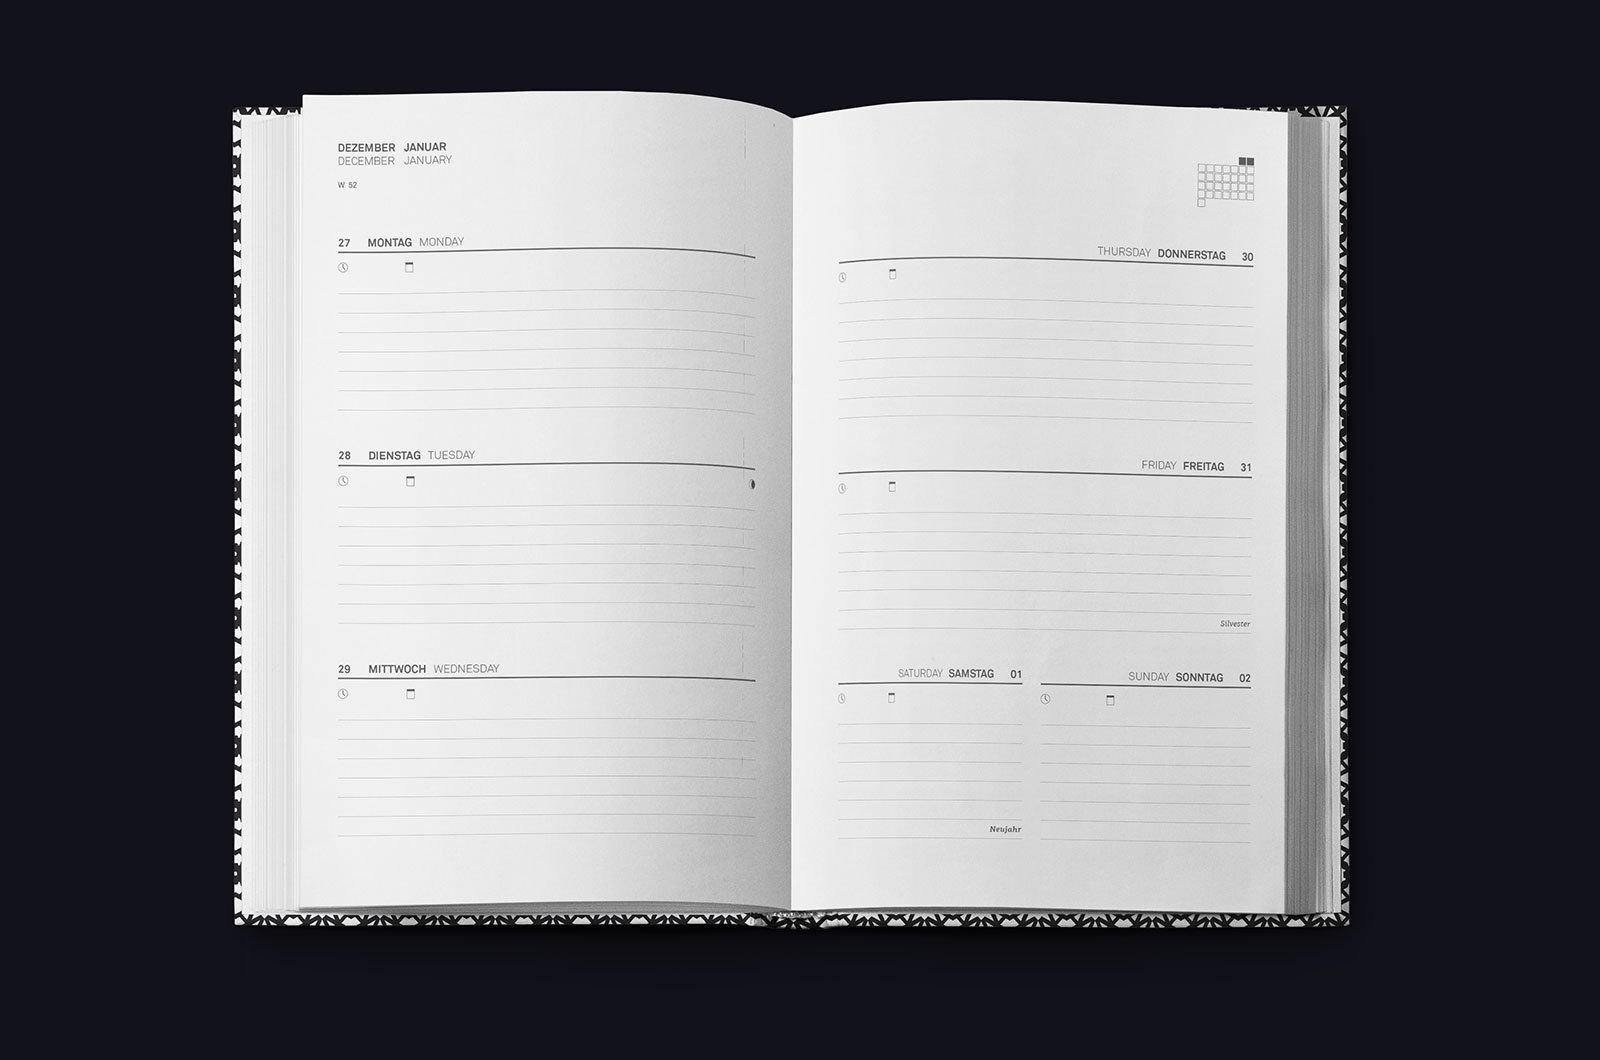 lexander Glante - Works - Zweitausendelf Calendar - 08